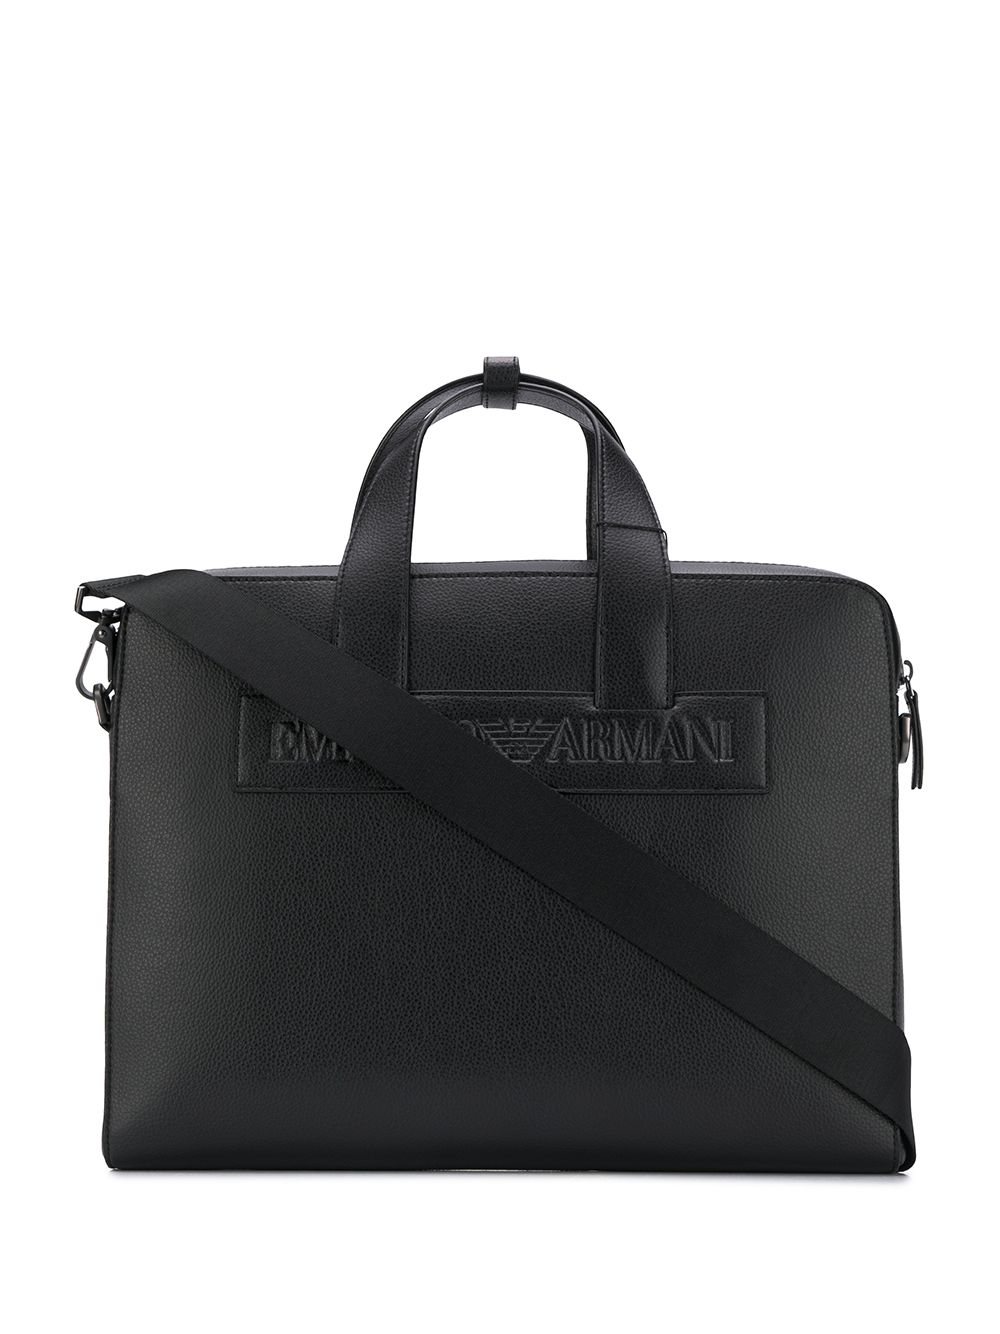 фото Emporio Armani портфель с тисненым логотипом